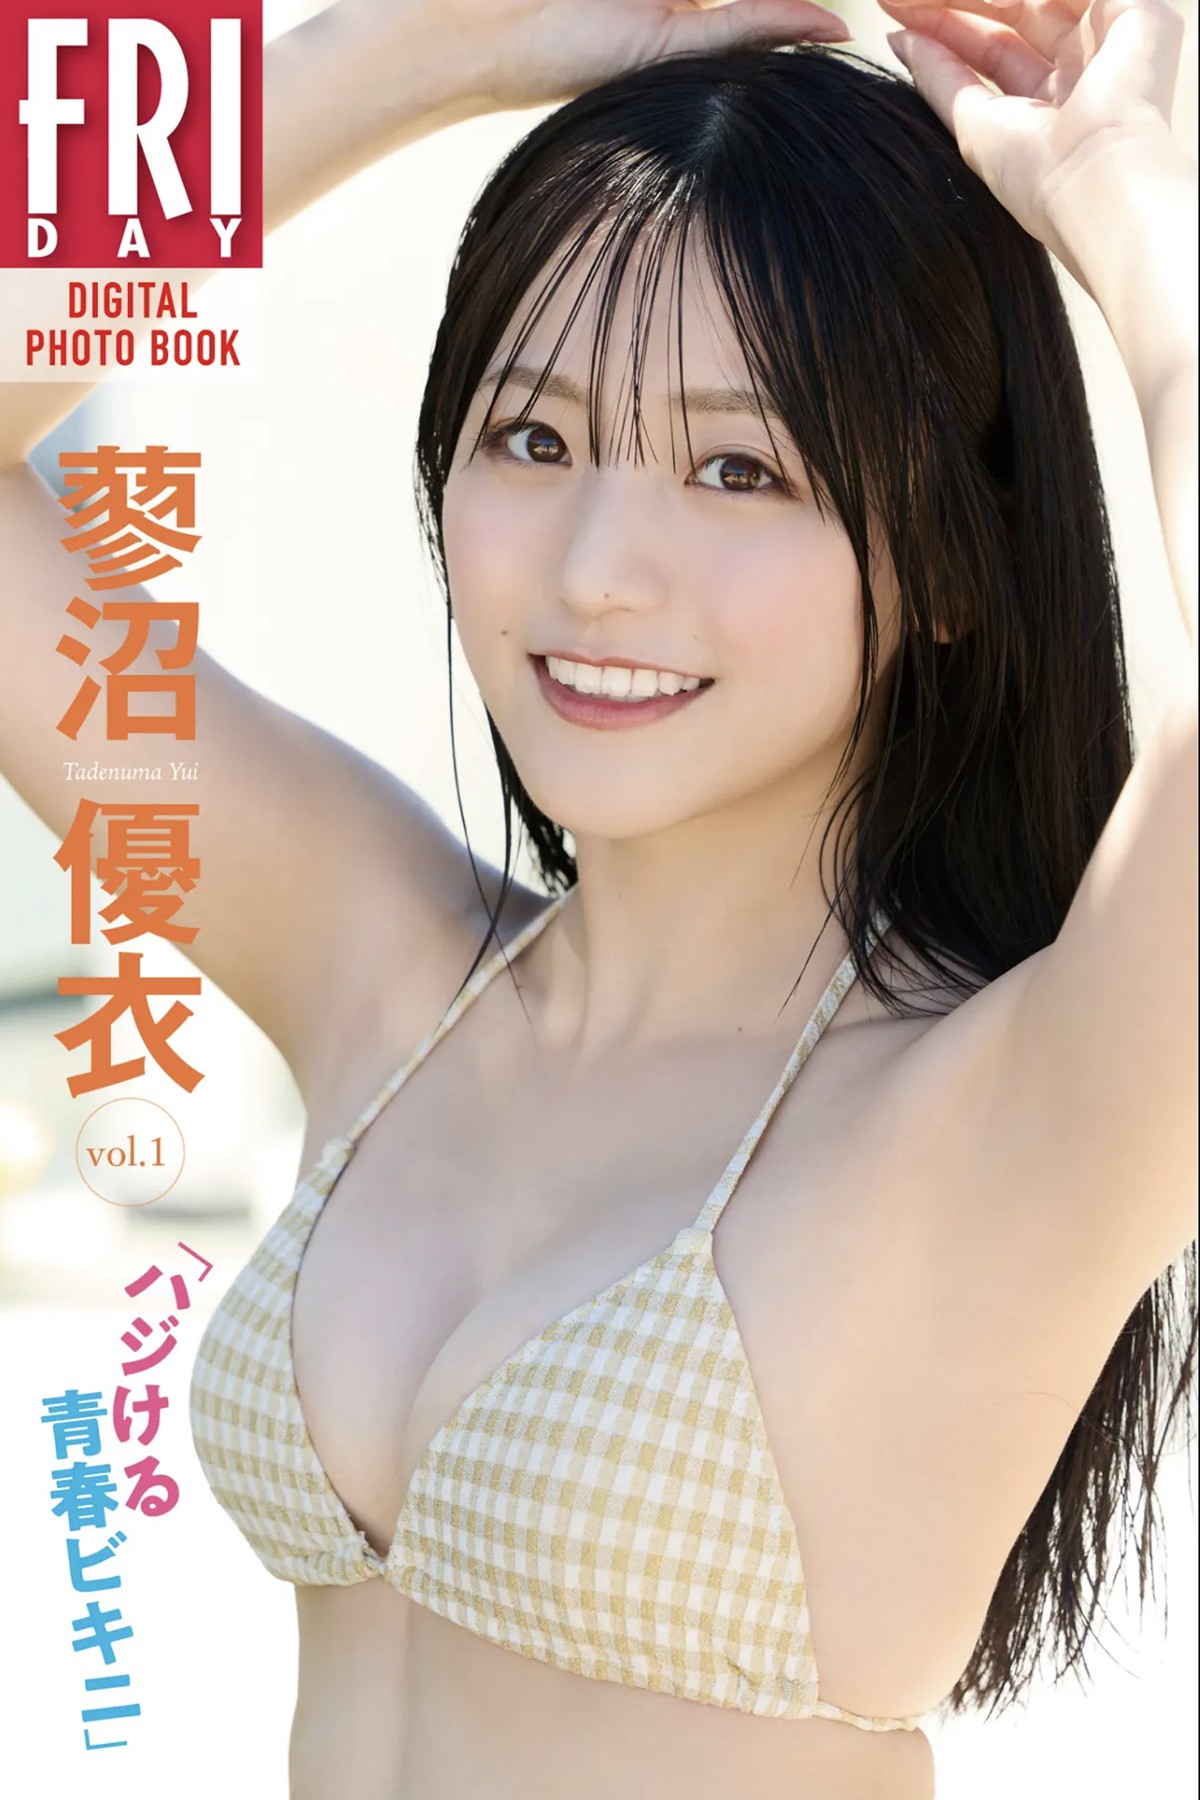 FRIDAYデジタル写真集 蓼沼優衣 Yui Tadenuma – Breaking Youth Bikini Vol.1